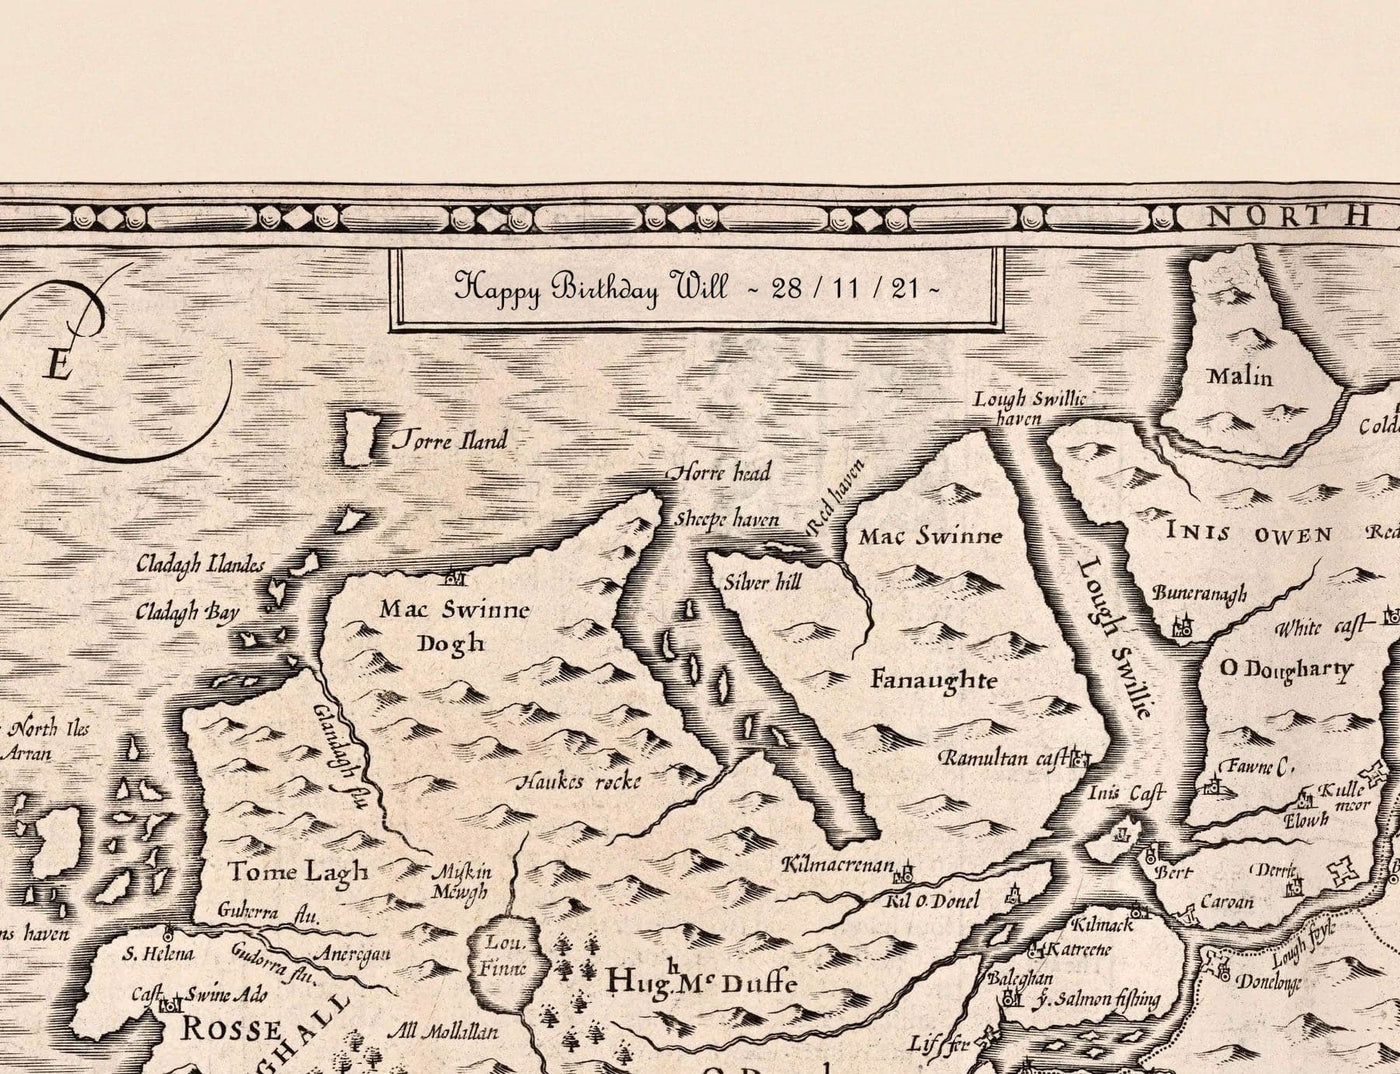 Antiguo mapa monocromo de la Isla de Wight, 1611 por John Speed - Newport, Ride, Cowes, Sandown, Shanklin, Southampton